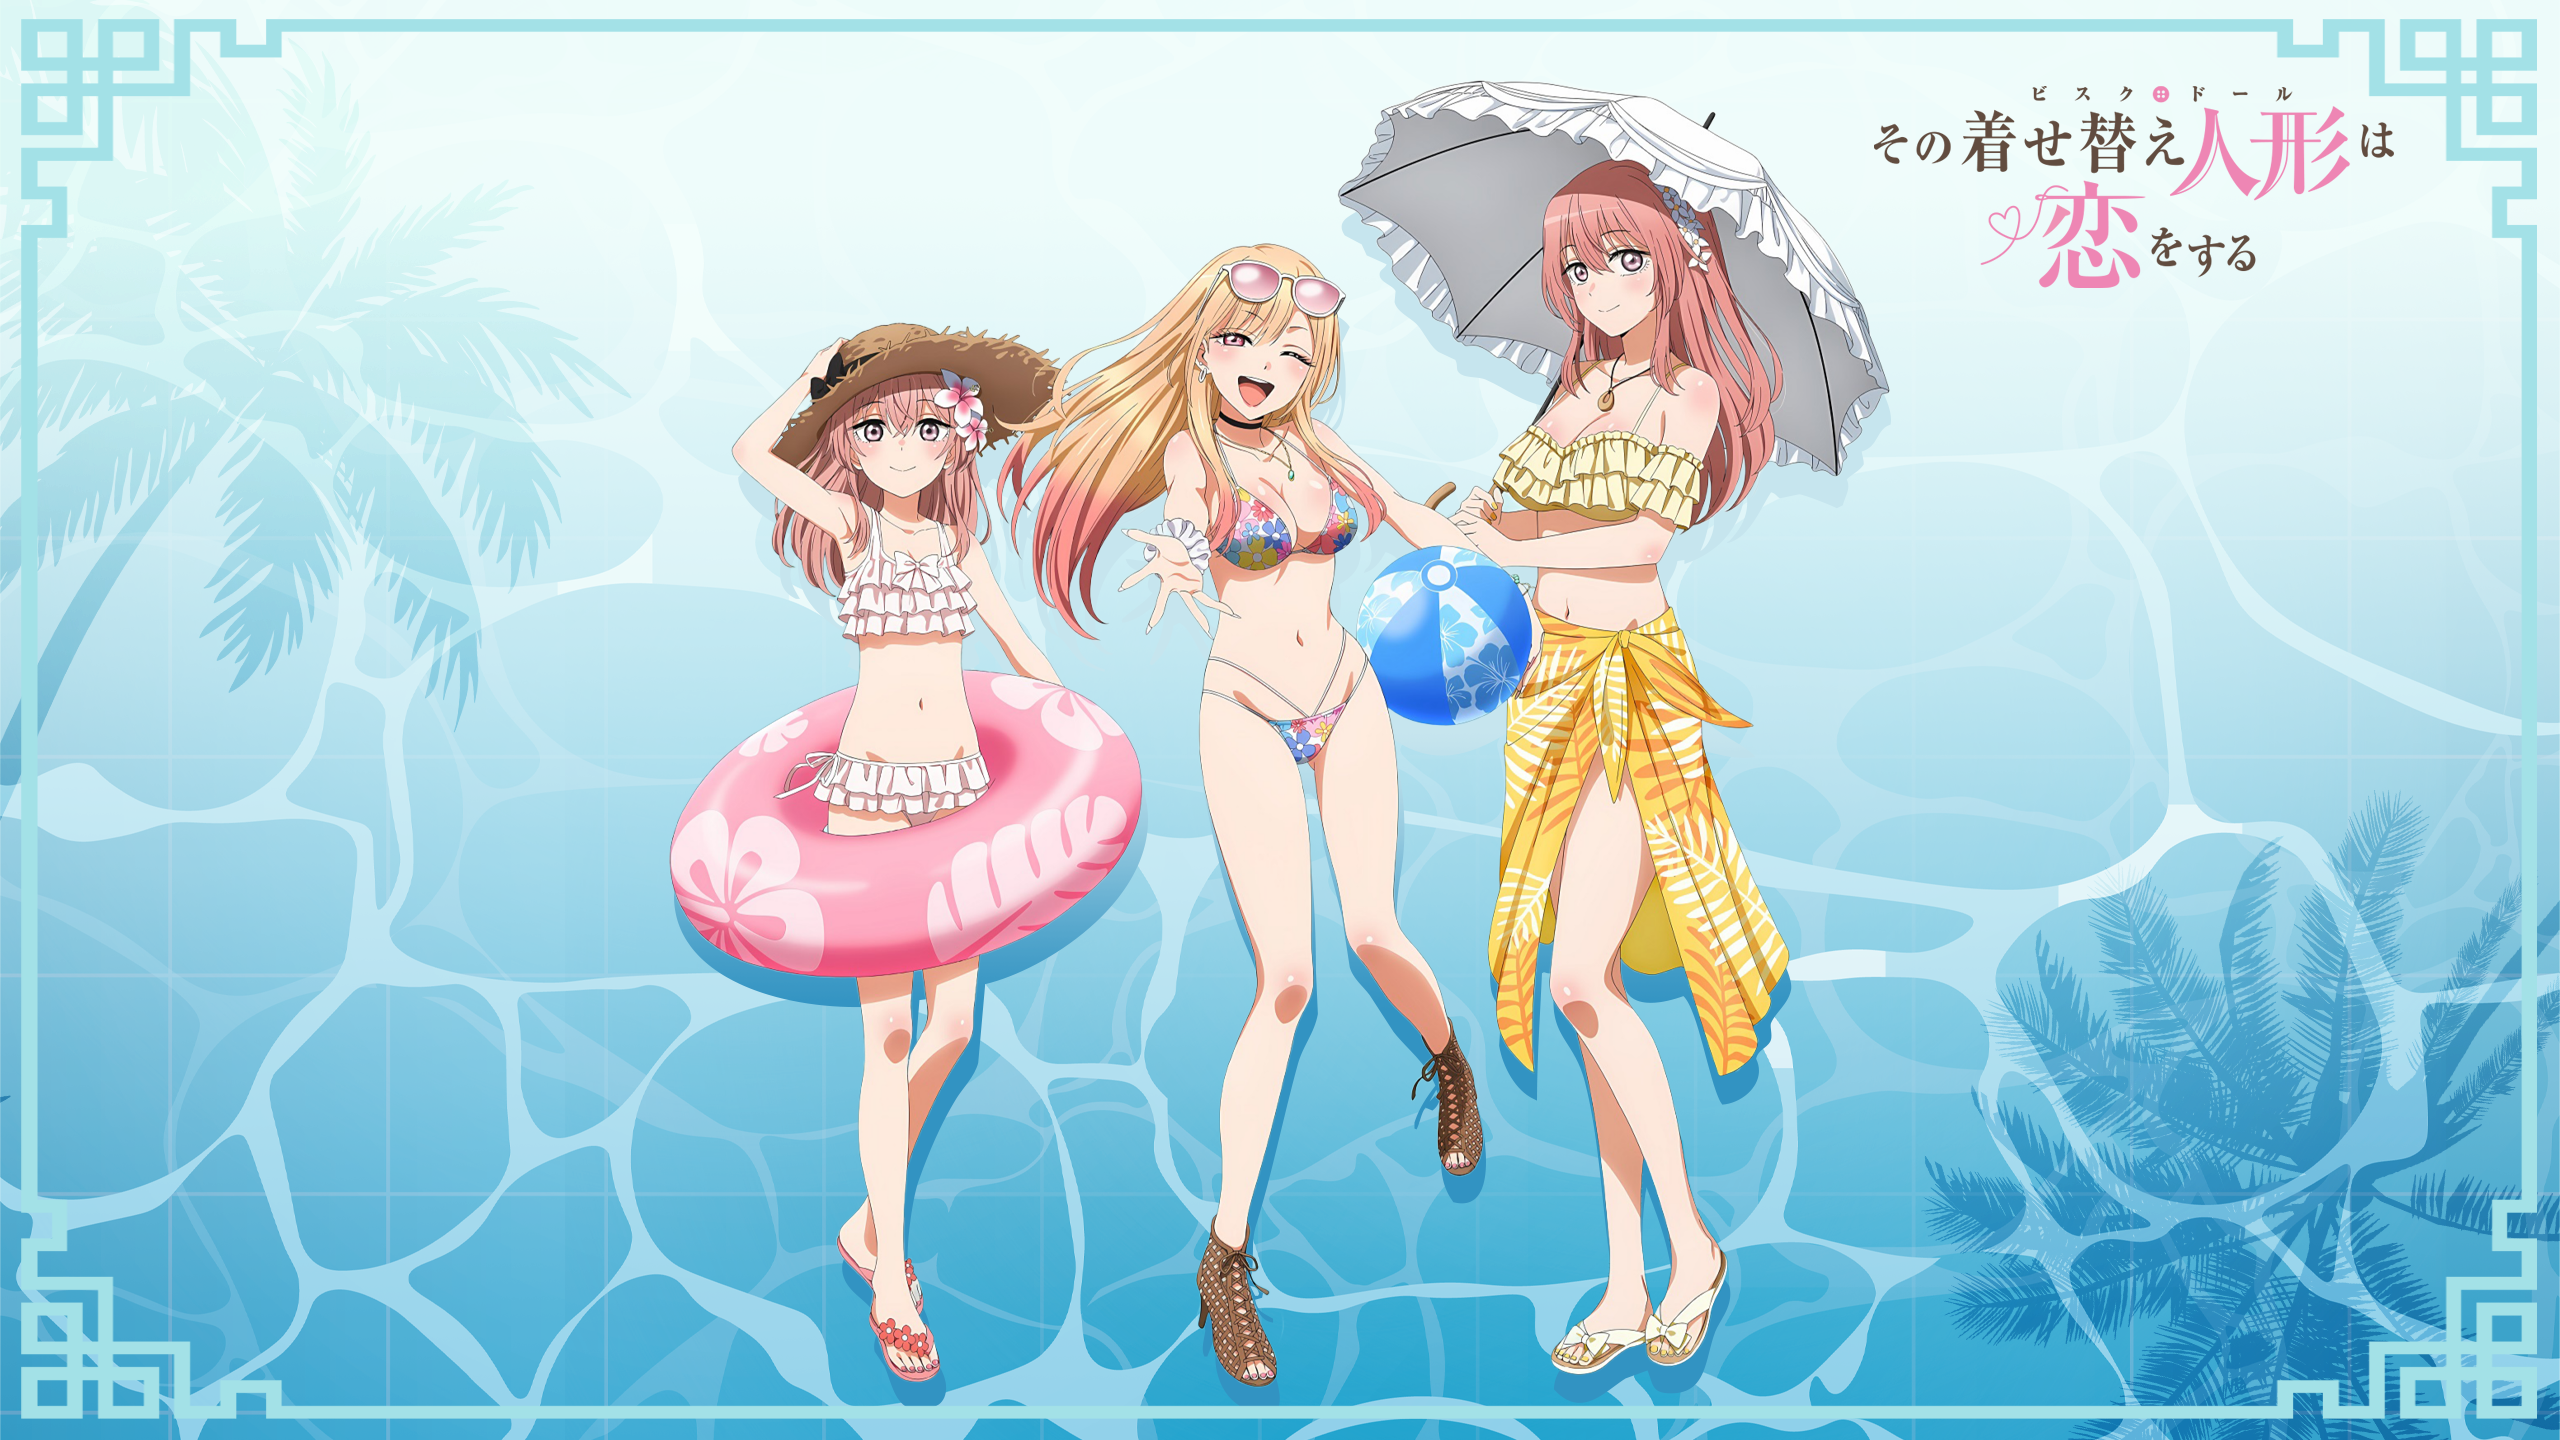 Anime 2560x1440 anime girls Sono Bisque Doll wa Koi wo Suru Kitagawa Marin Sajuna Inui Inui Shinju blonde swimwear pink hair